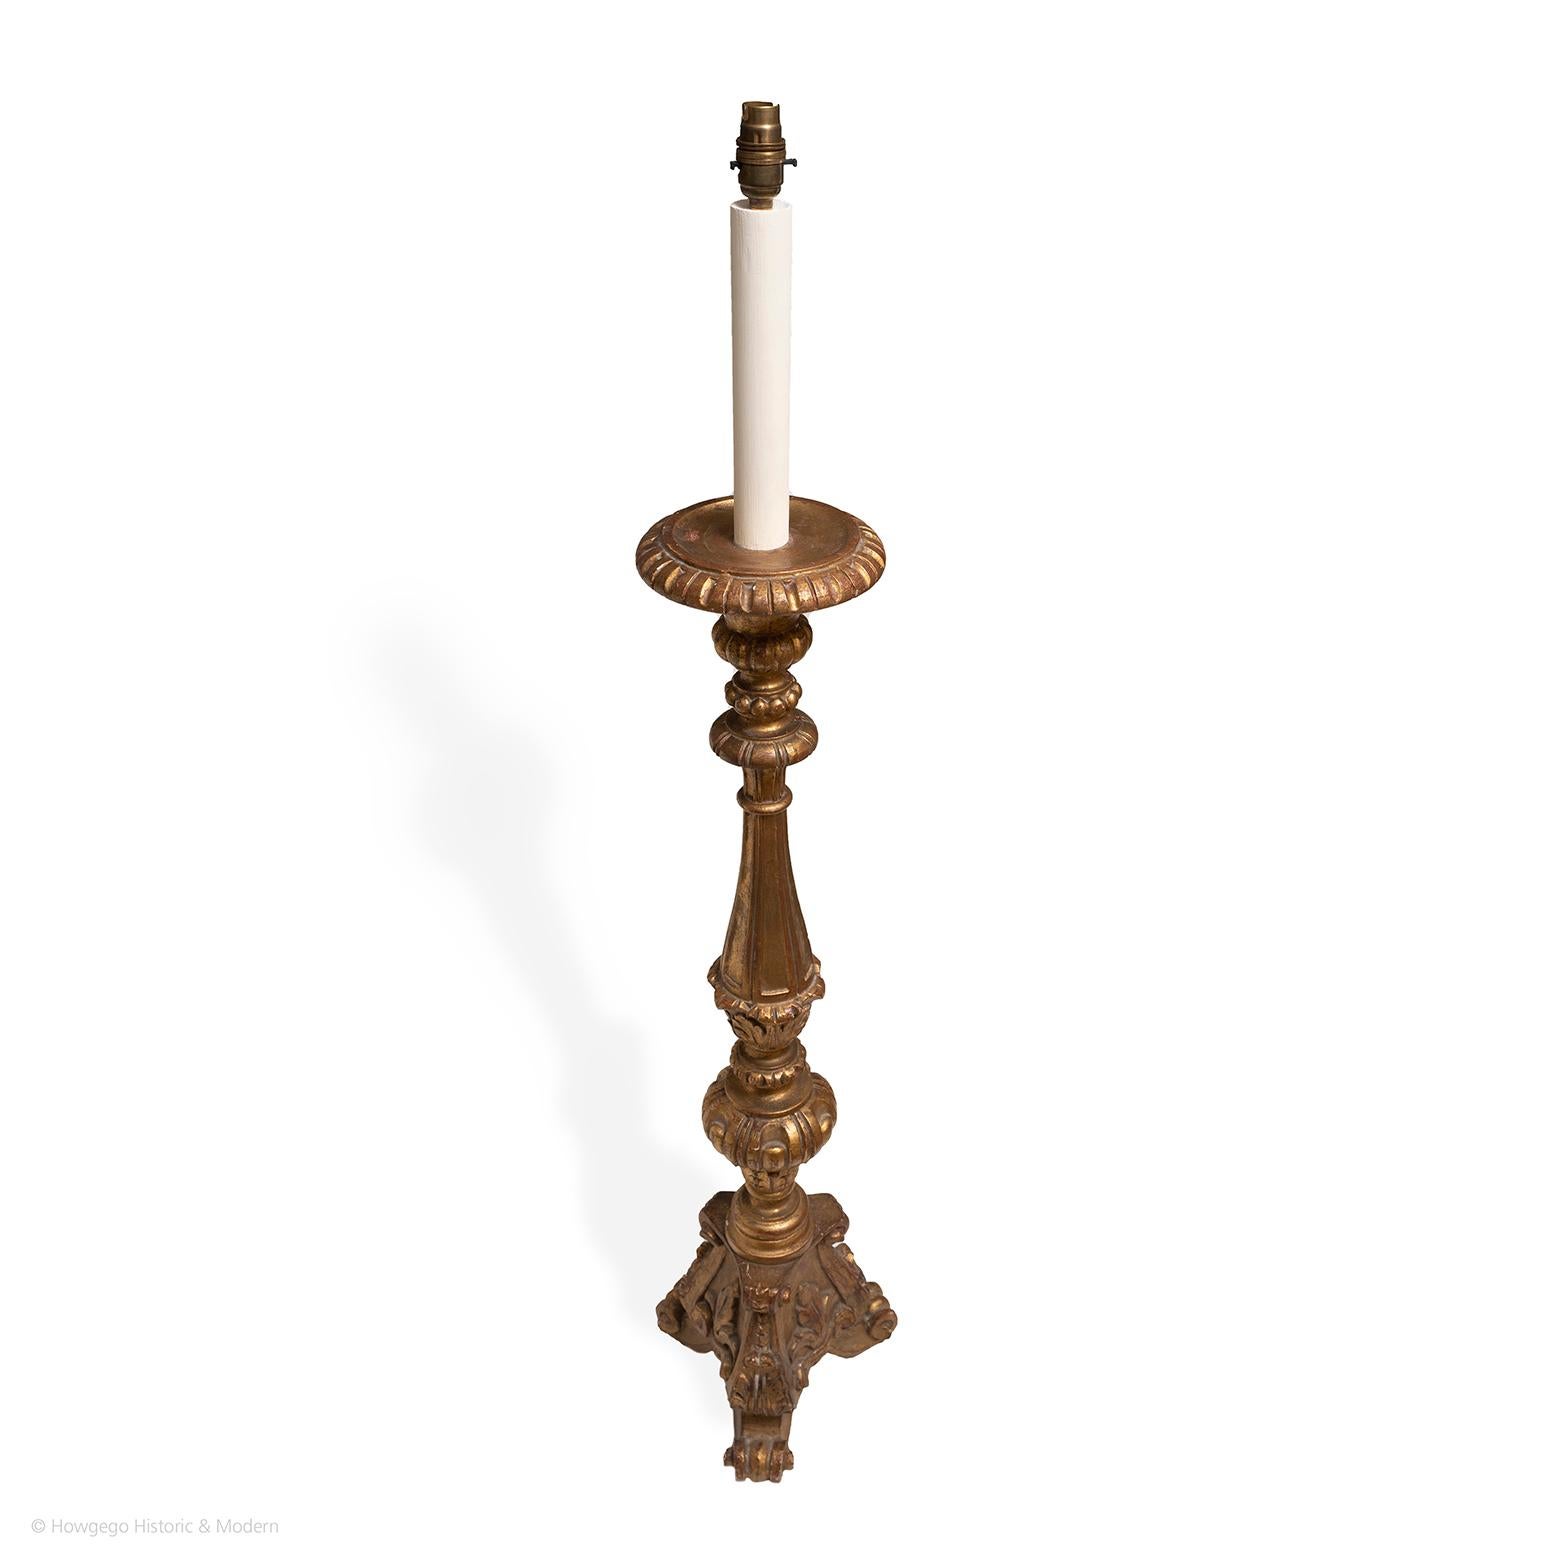 Baroque Lampe sur pied Torchere italienne dorée Fleur de Lys 128cm 4ft 21/2